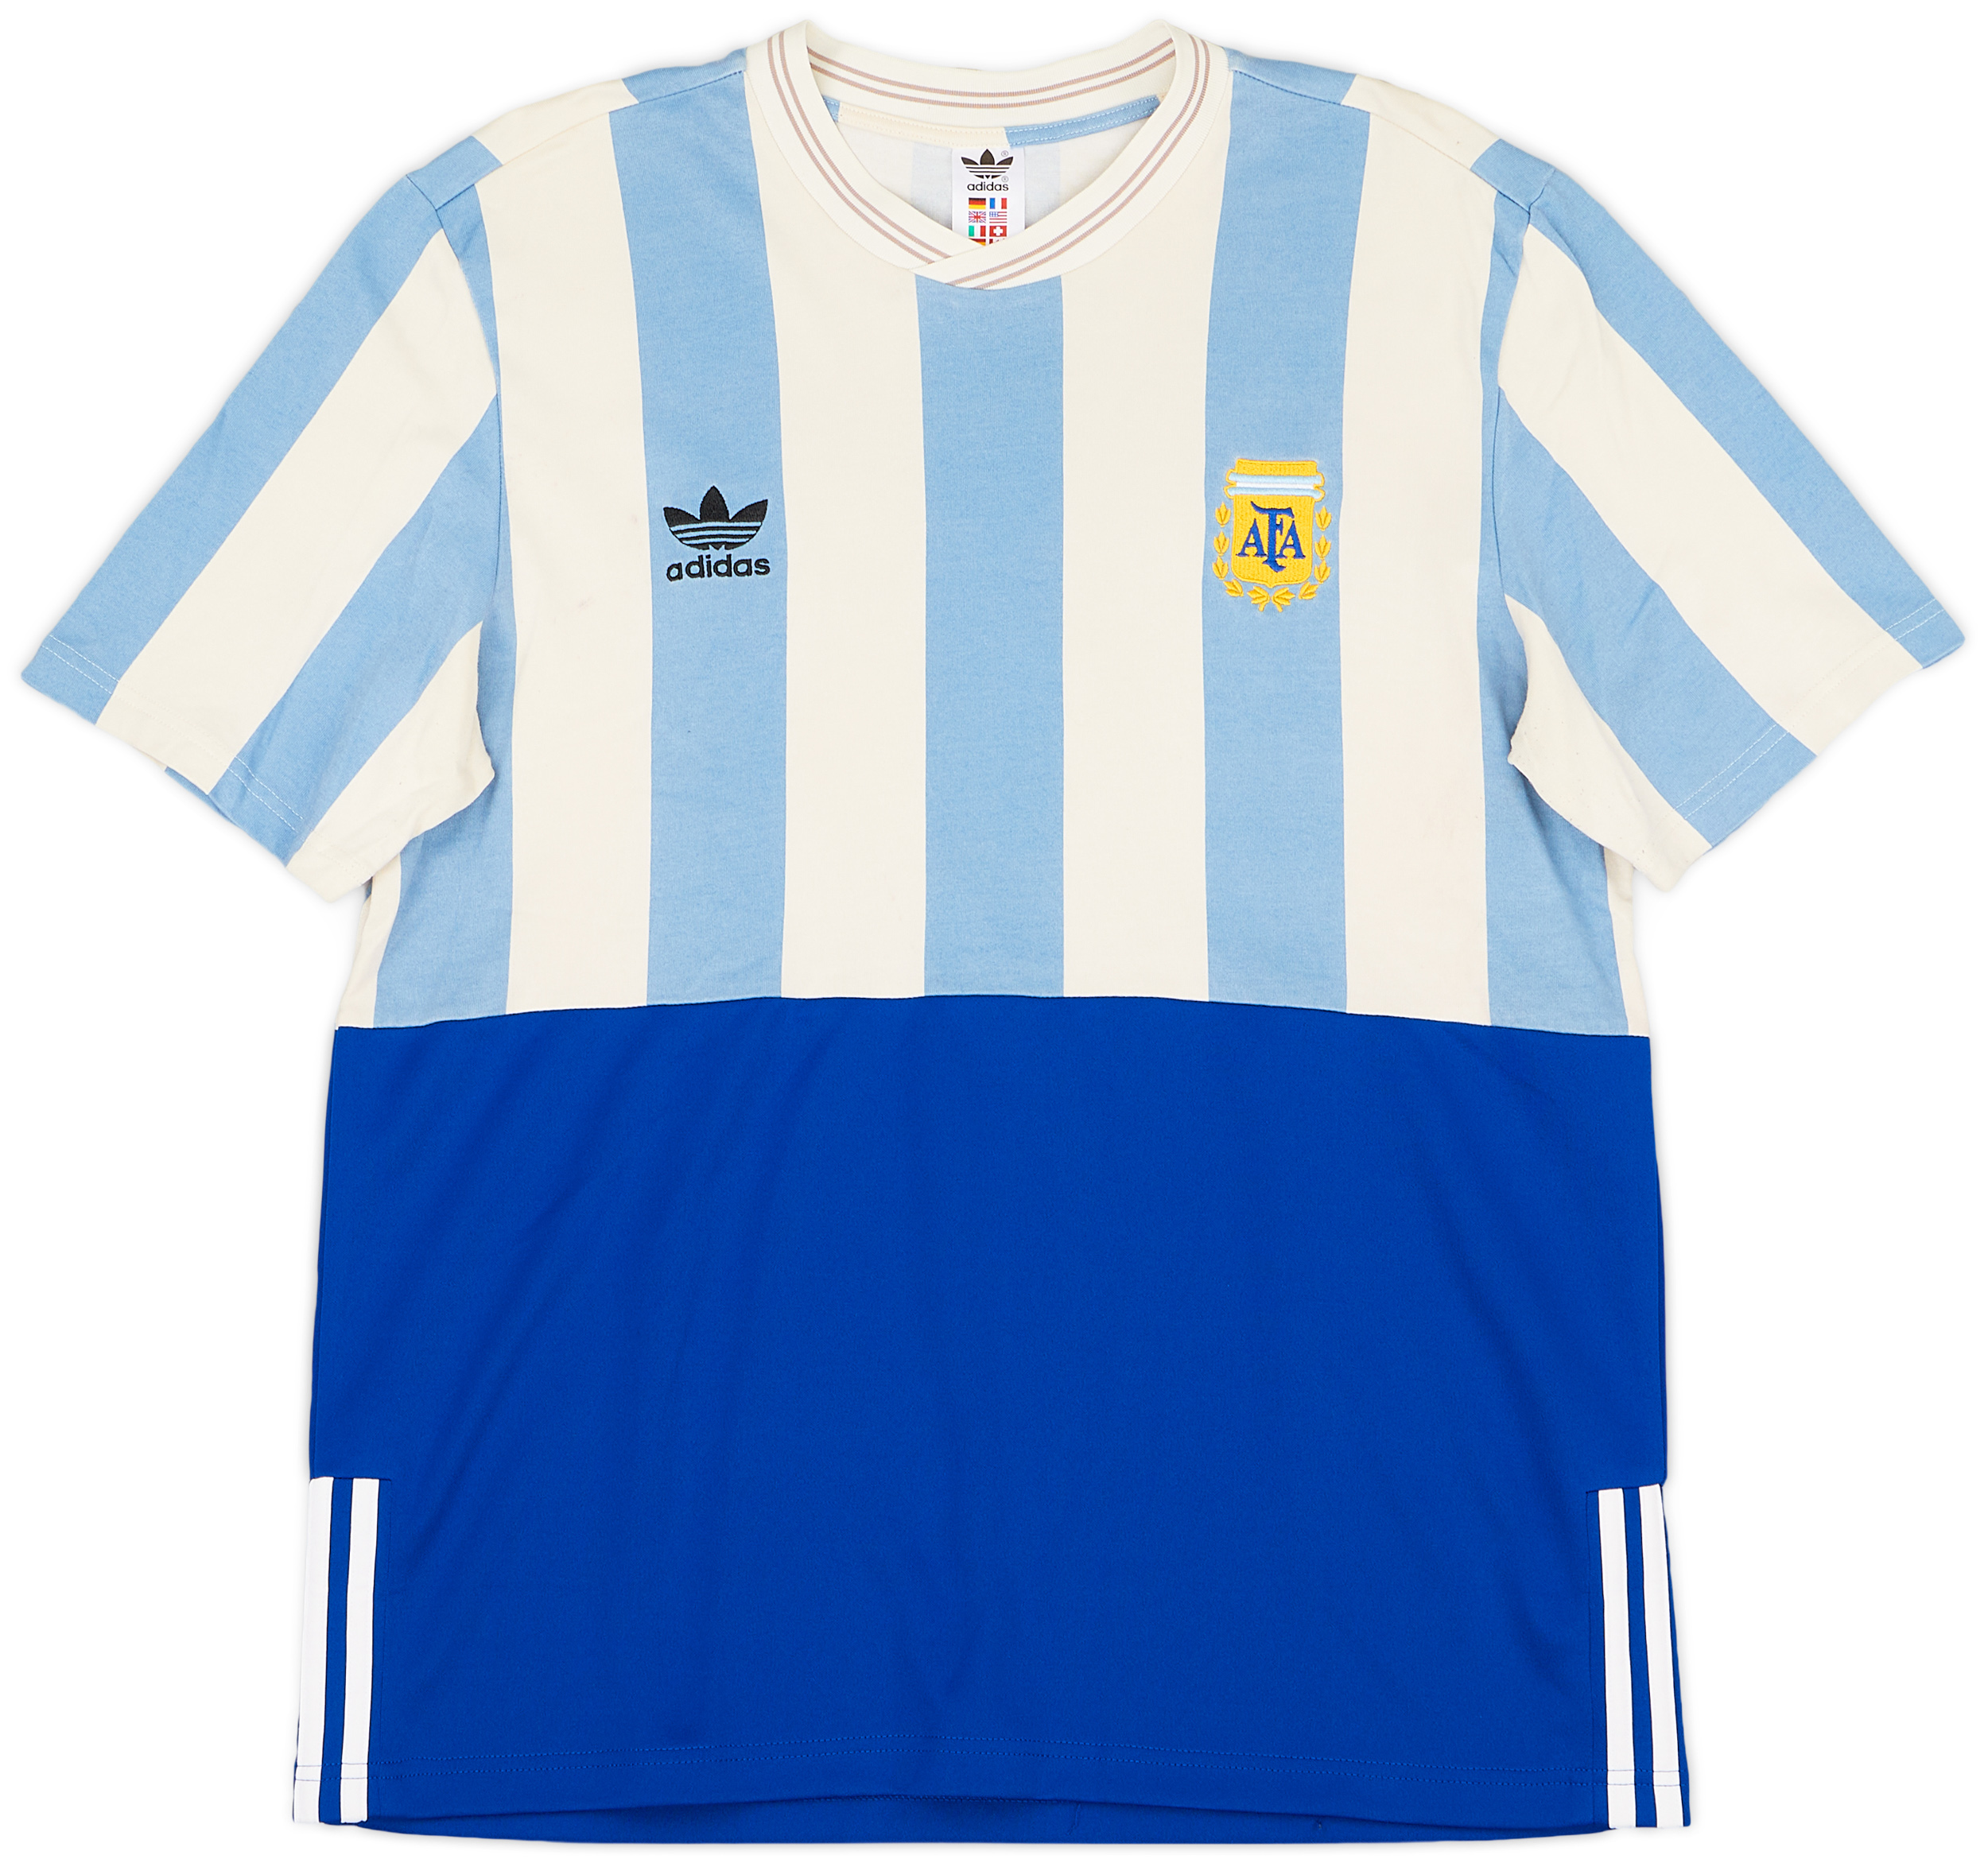 2018 Argentina adidas Mashup Shirt - 8/10 - ()